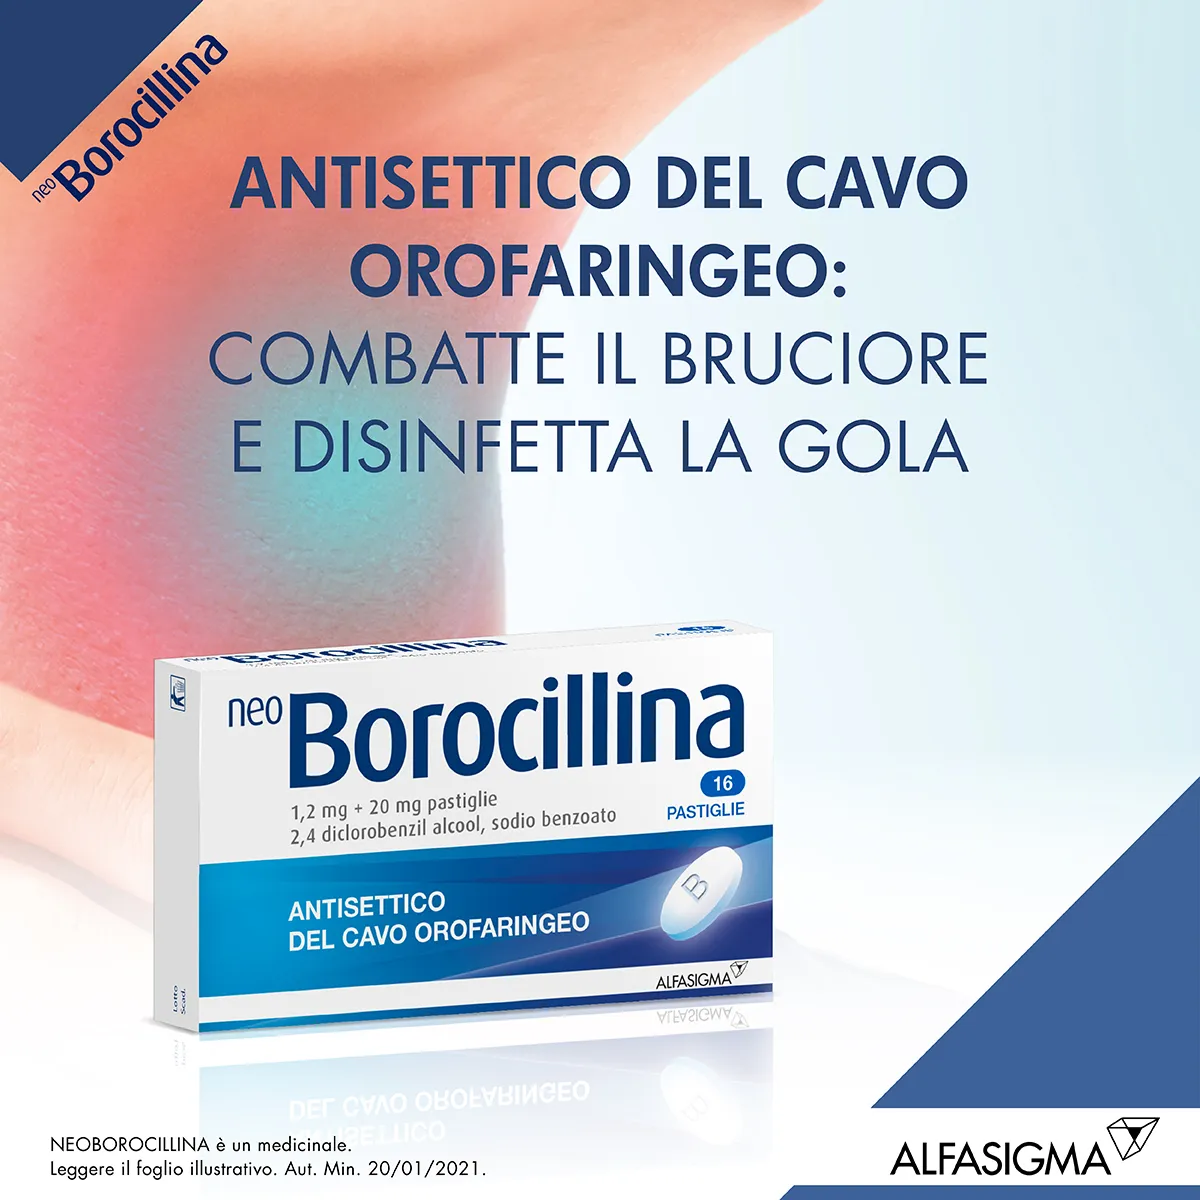 Neo Borocillina 1,2 mg + 20 mg 16 Pastiglie Antisettico Del Cavo Orofaringeo